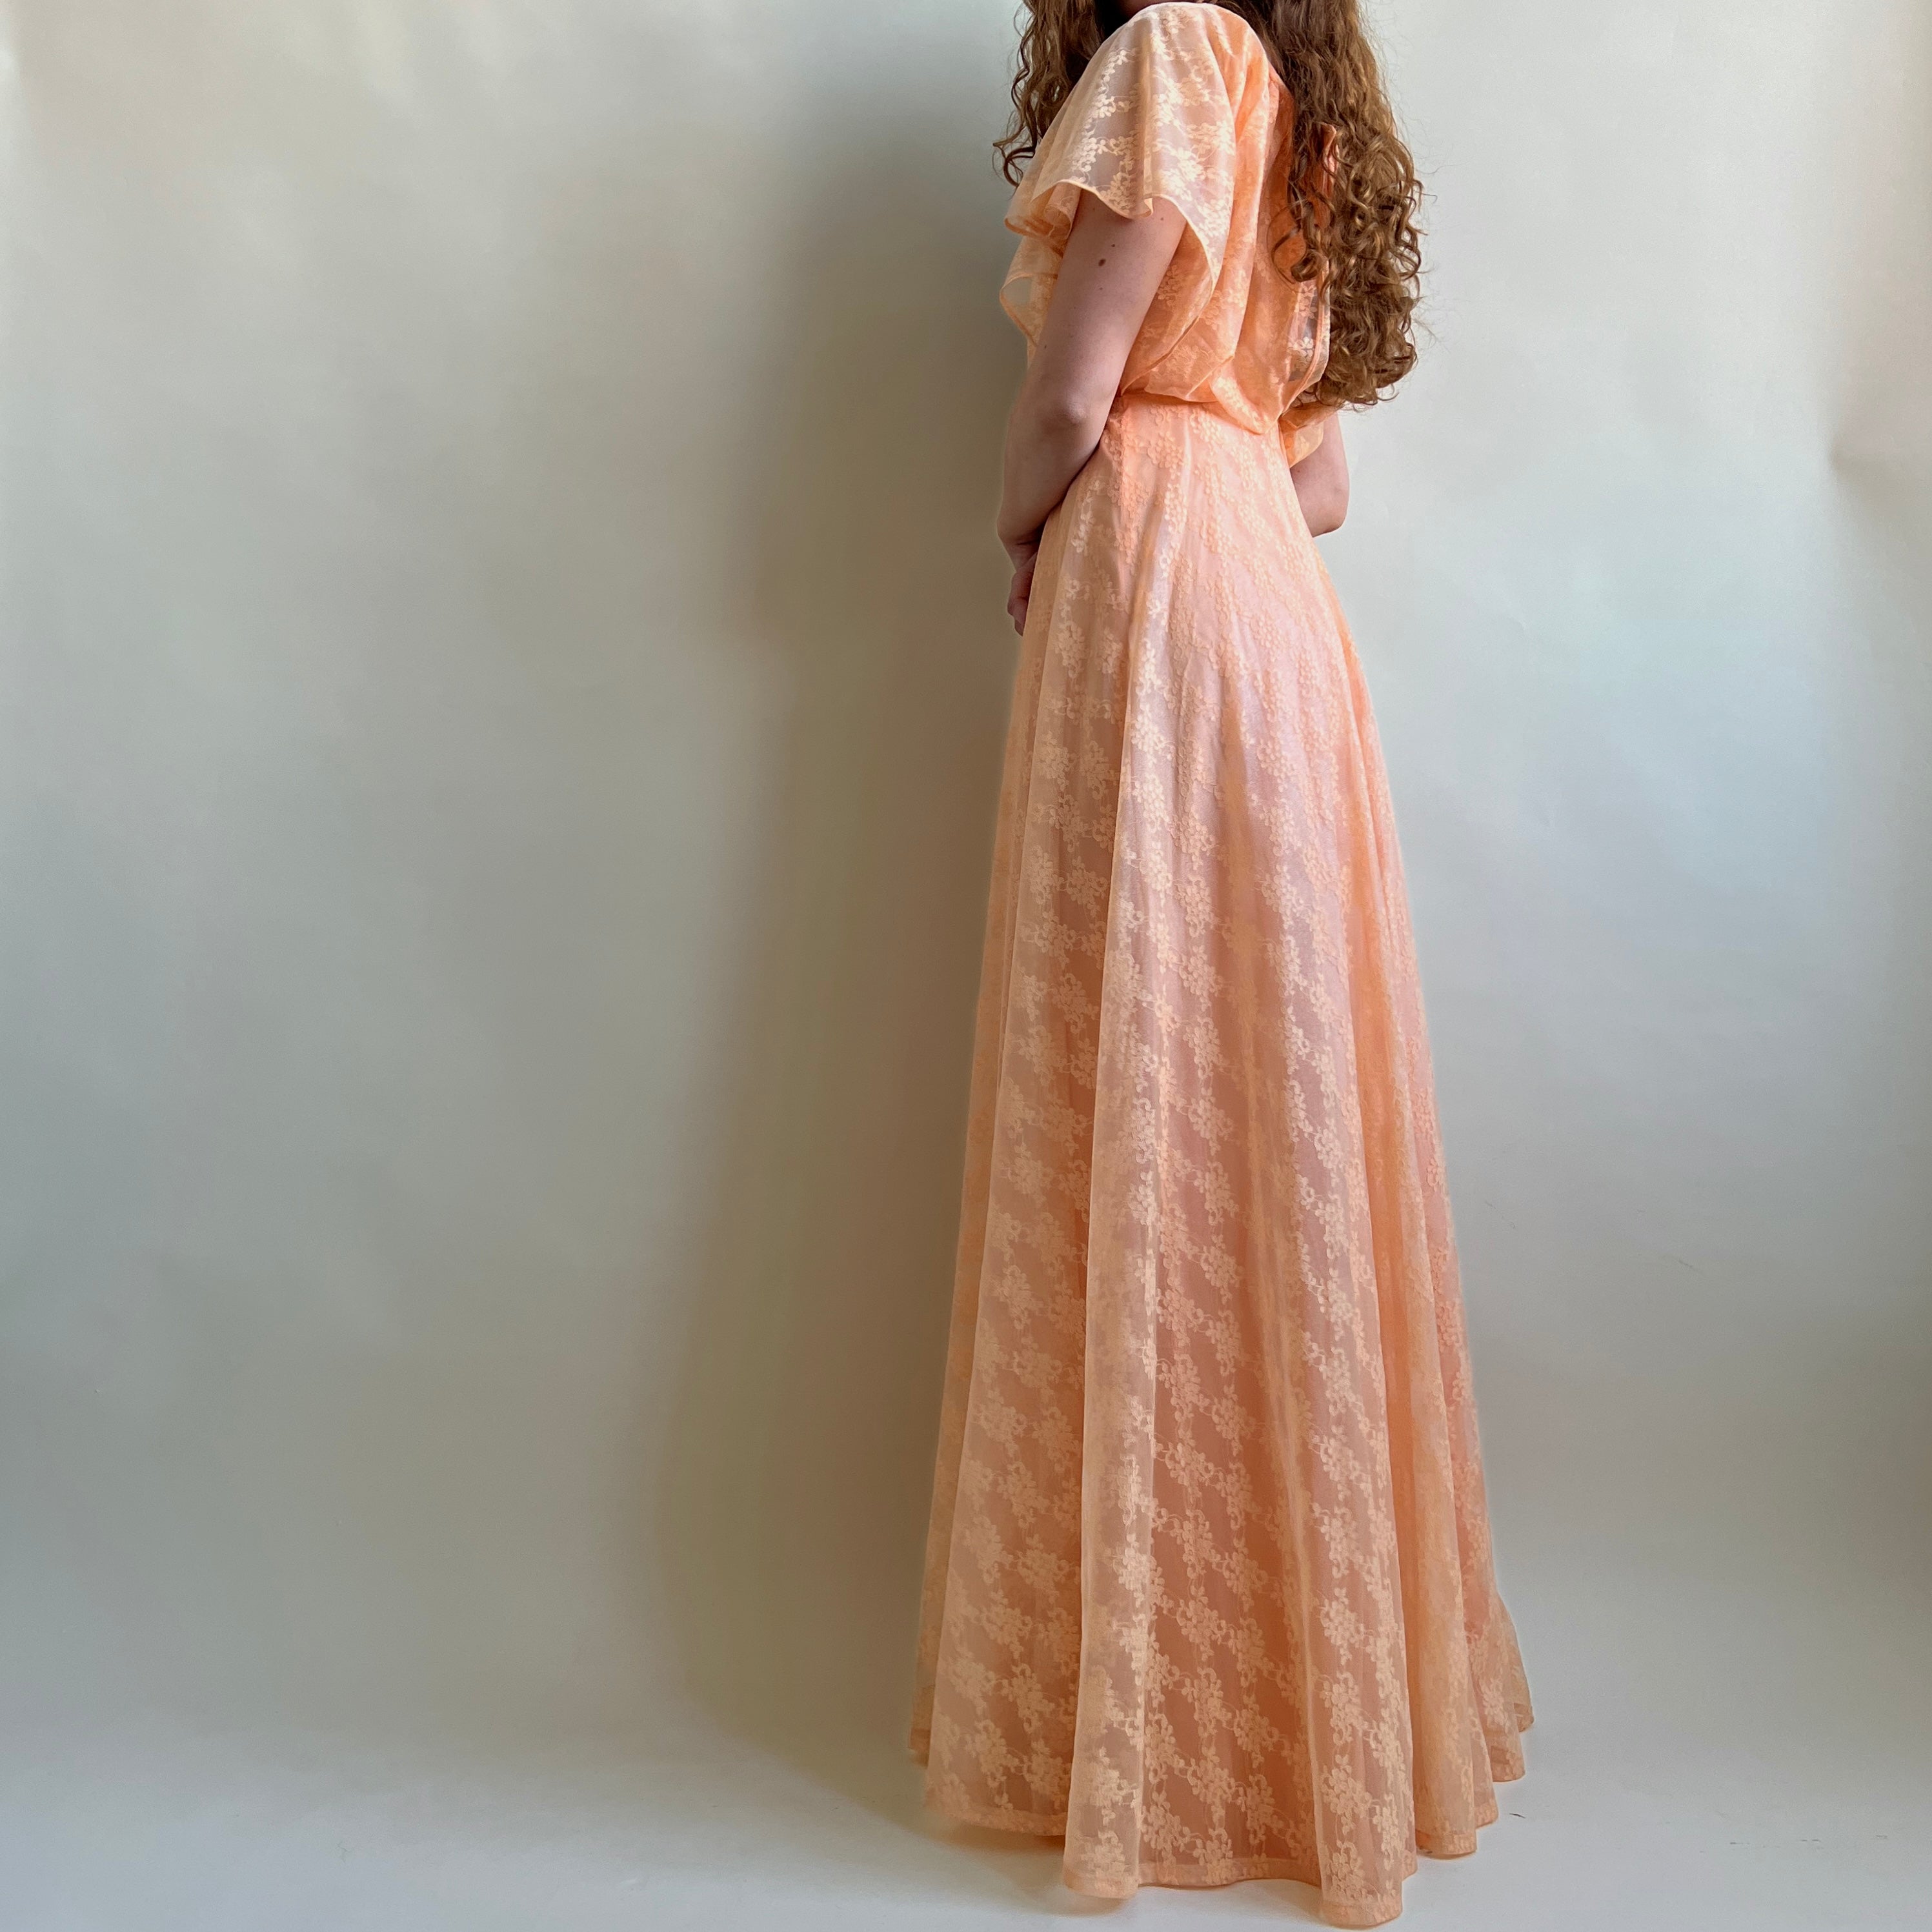 Vintage 70s/80s coral lace bridesmaids dress (S)